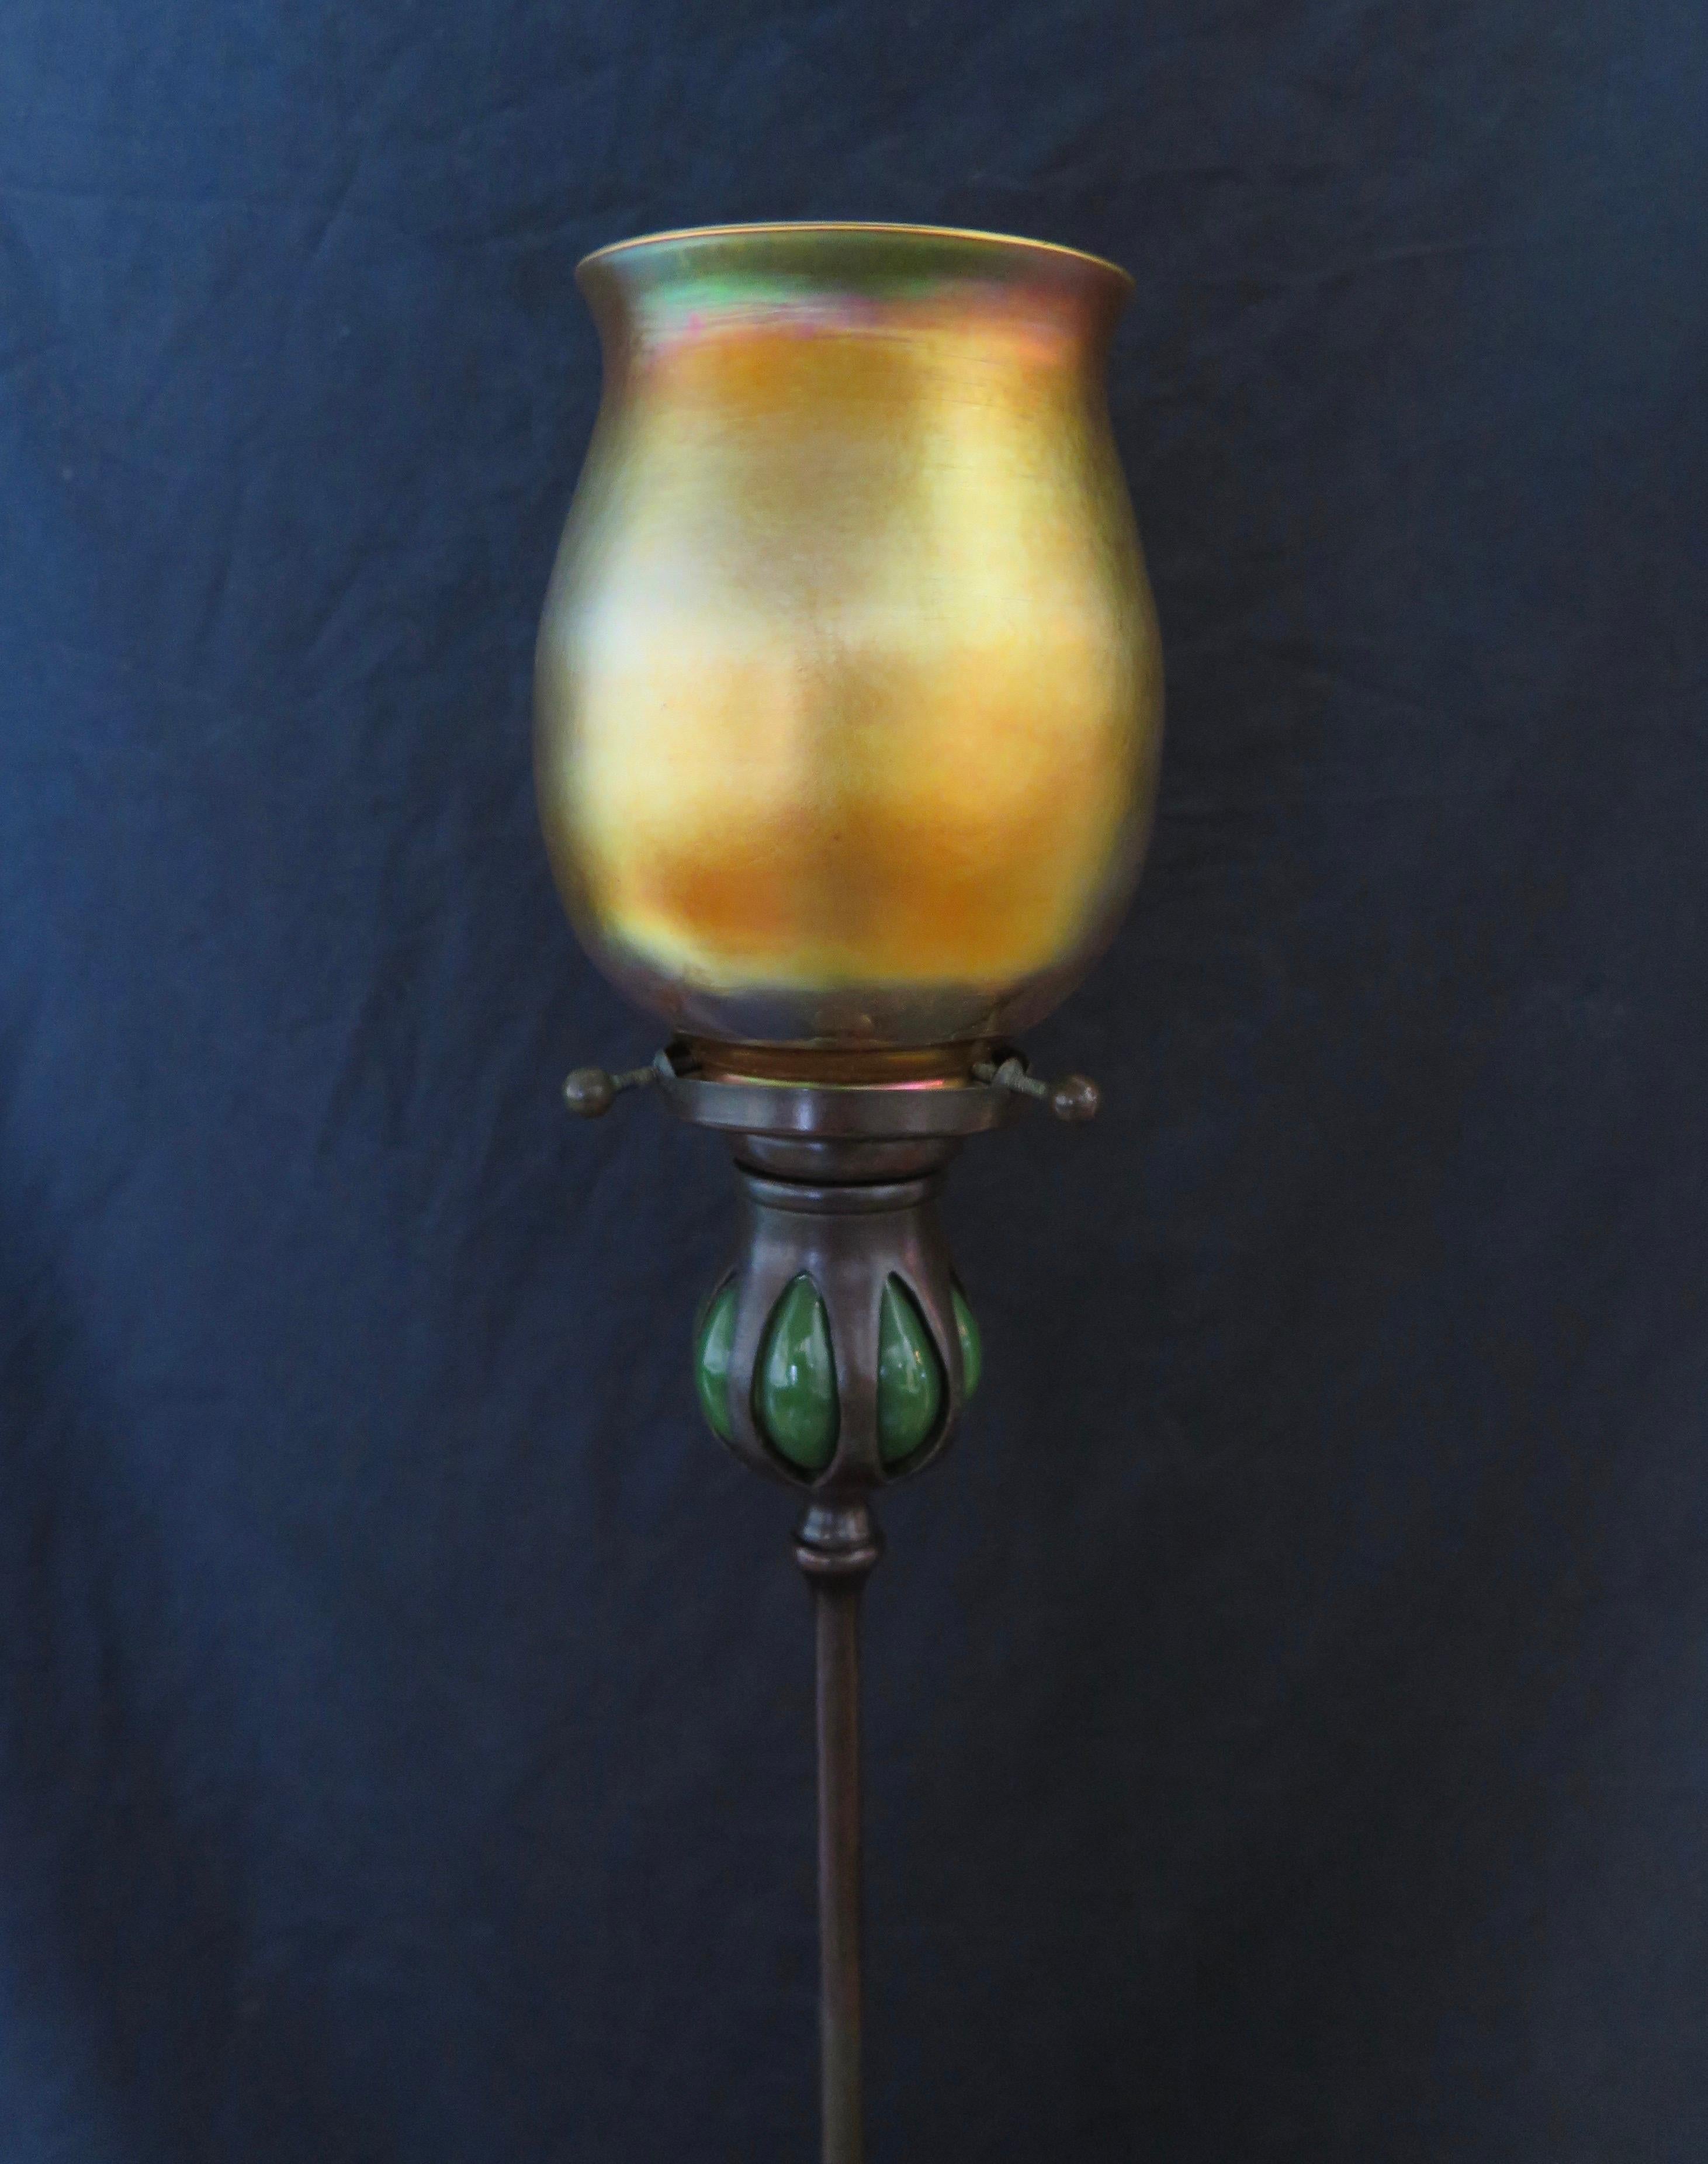 Dieser patinierte, hohe Kerzenständer der Tiffany Studios hat einen Kerzenbecher aus geblasenem grünem Glas. Dieser Kerzenbecher enthält einen originalen Lampenschirmhalter mit 3 Schrauben und hält einen wunderschönen irisierenden goldenen Tiffany